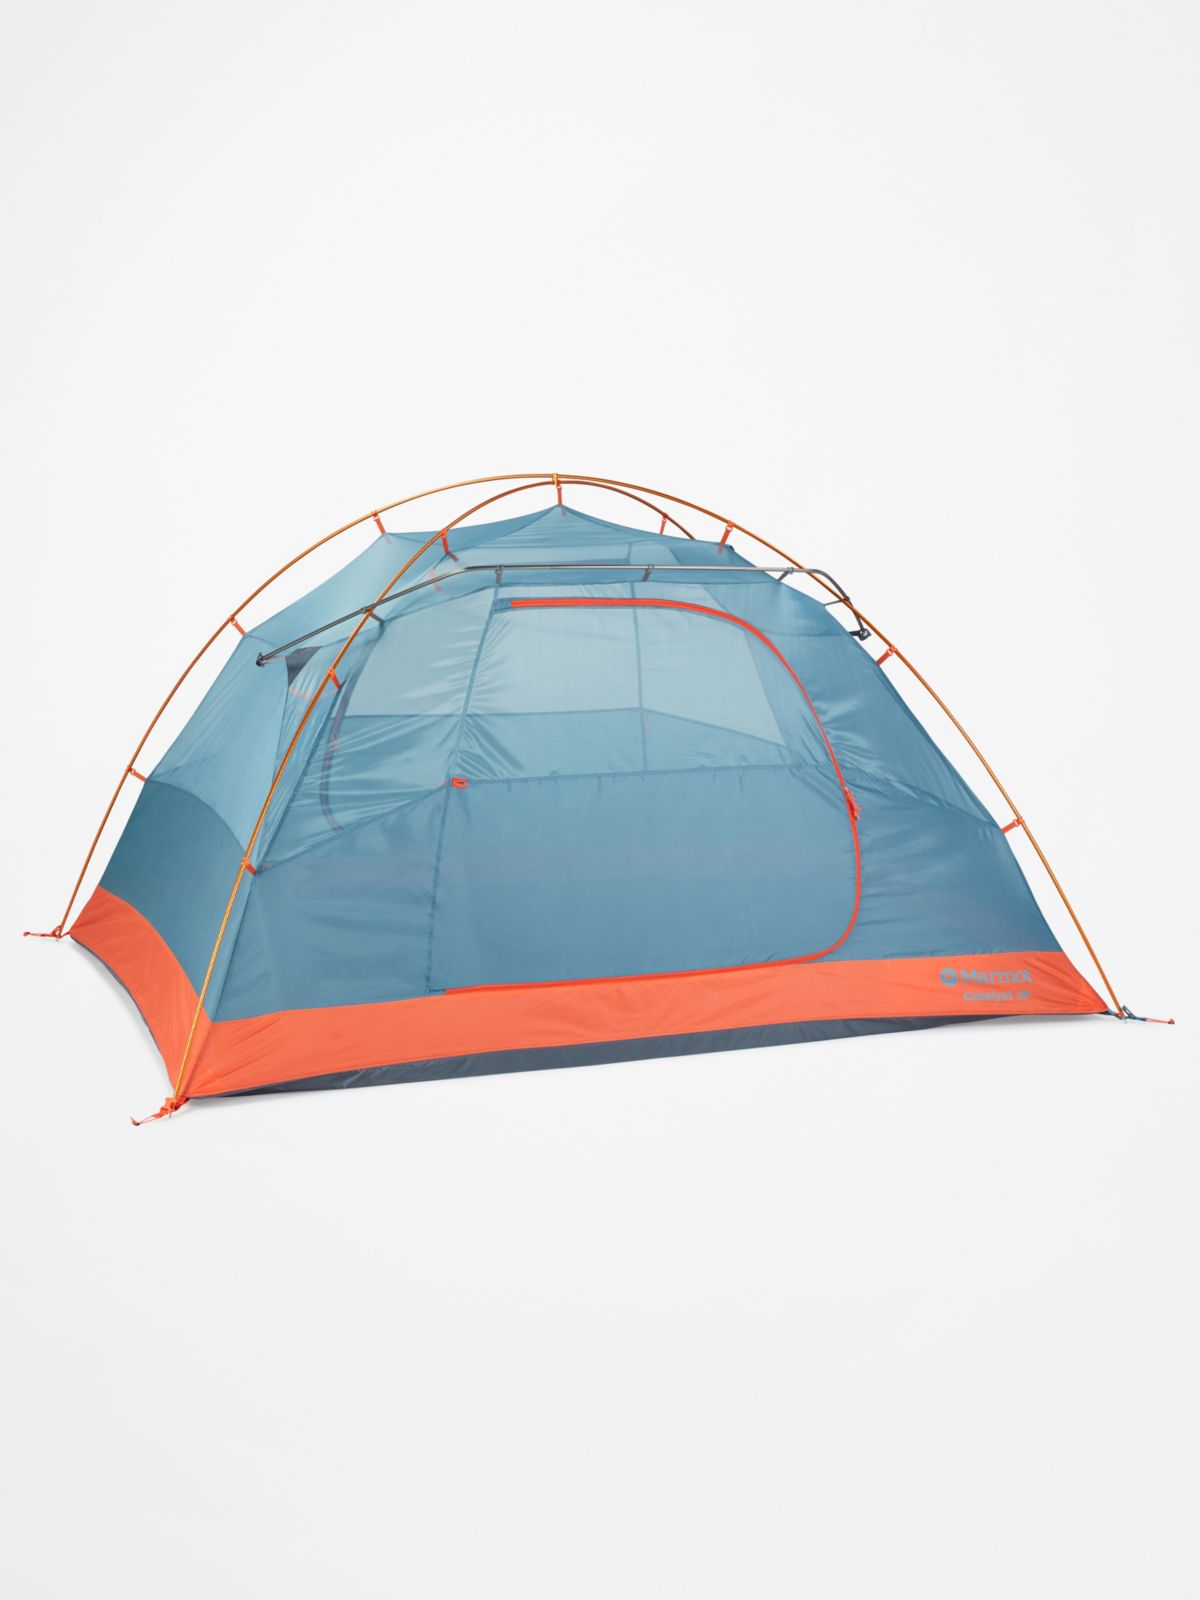 Assembled tent